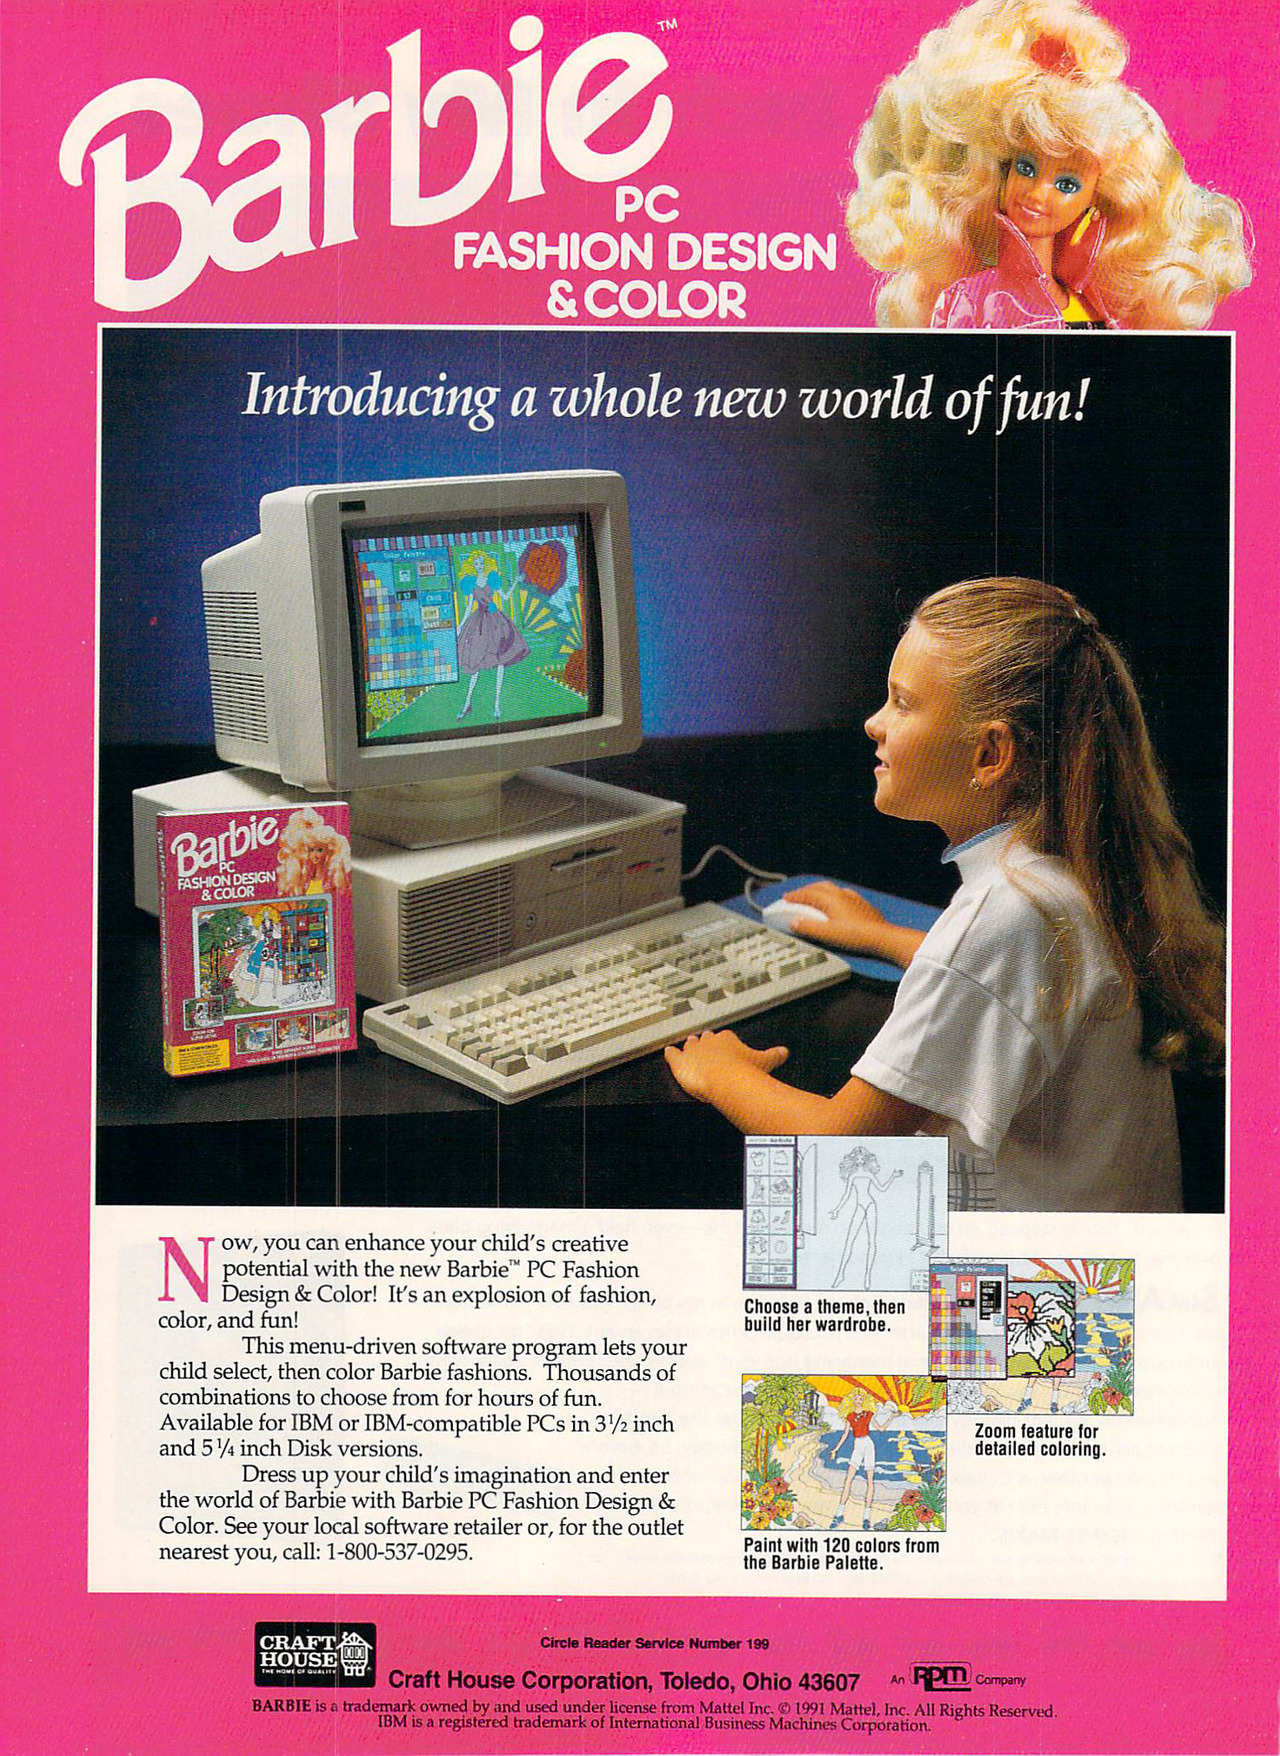 jaquette du jeu vidéo Barbie PC Fashion Design & Color